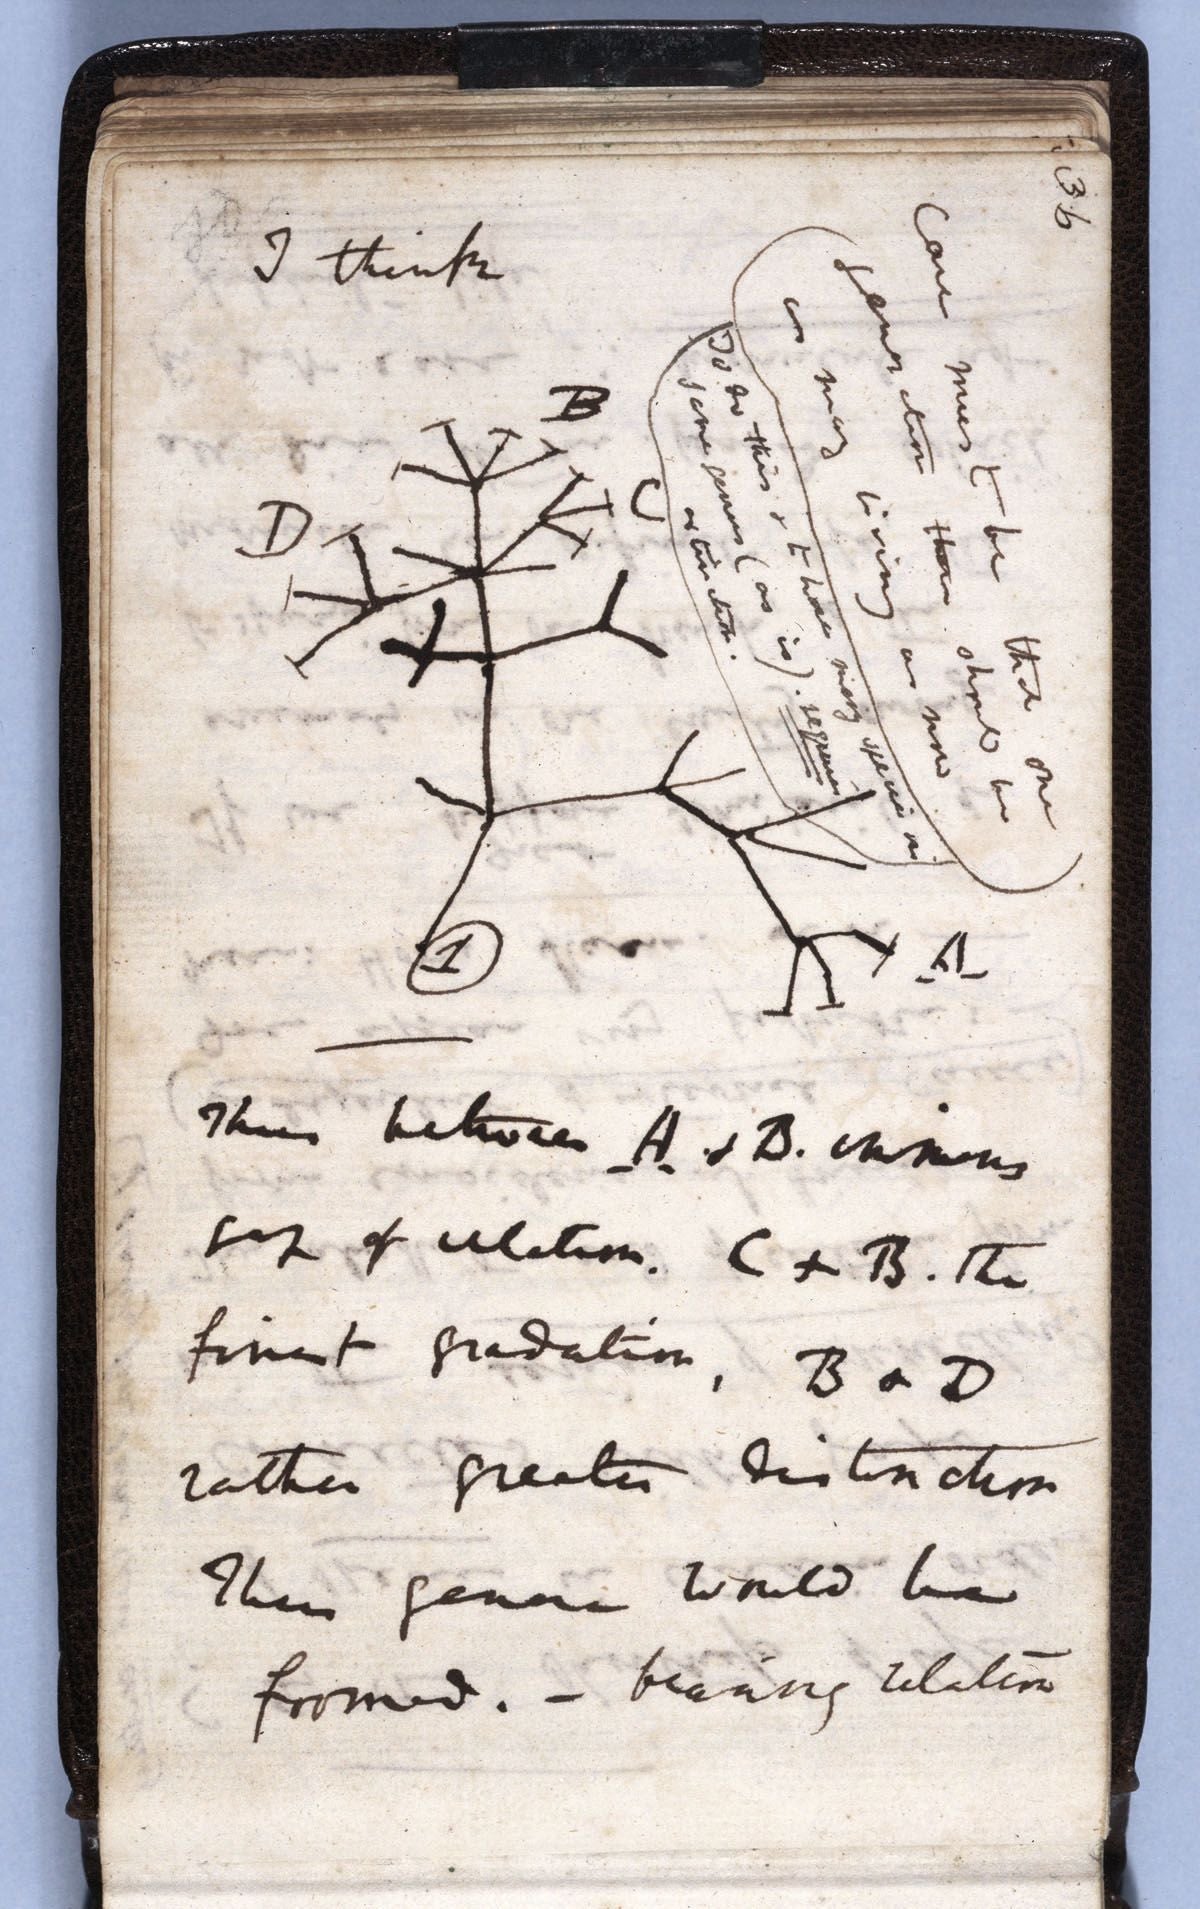 Uno de los cuadernos perdidos de Charles Darwin contenía su boceto del Árbol de la vida de julio de 1837.